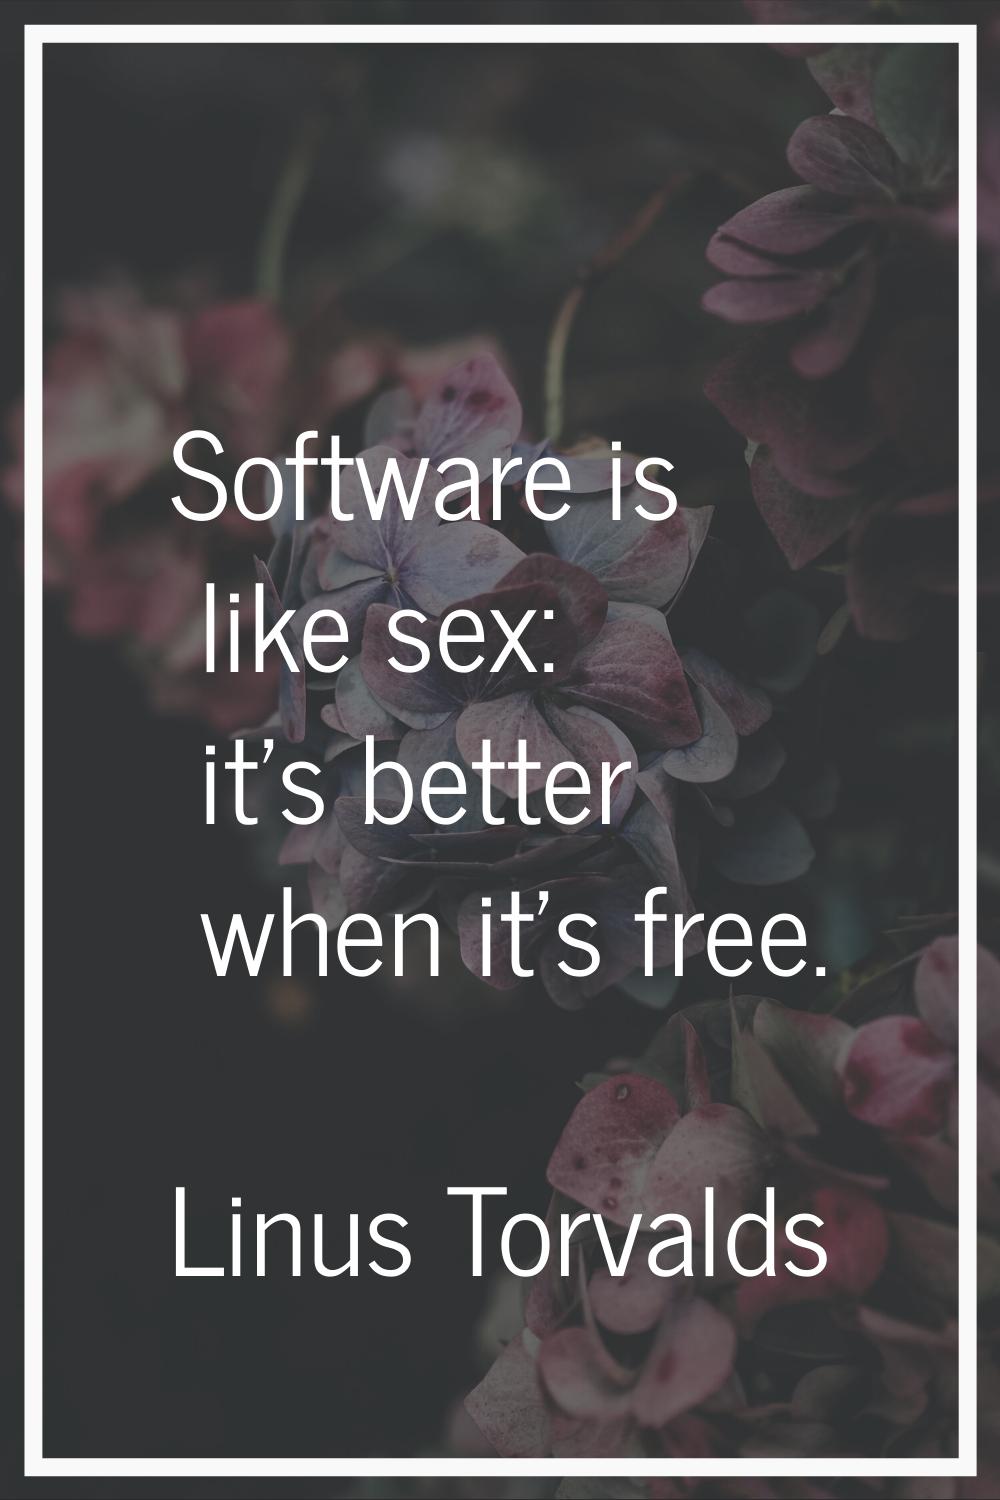 Software is like sex: it's better when it's free.